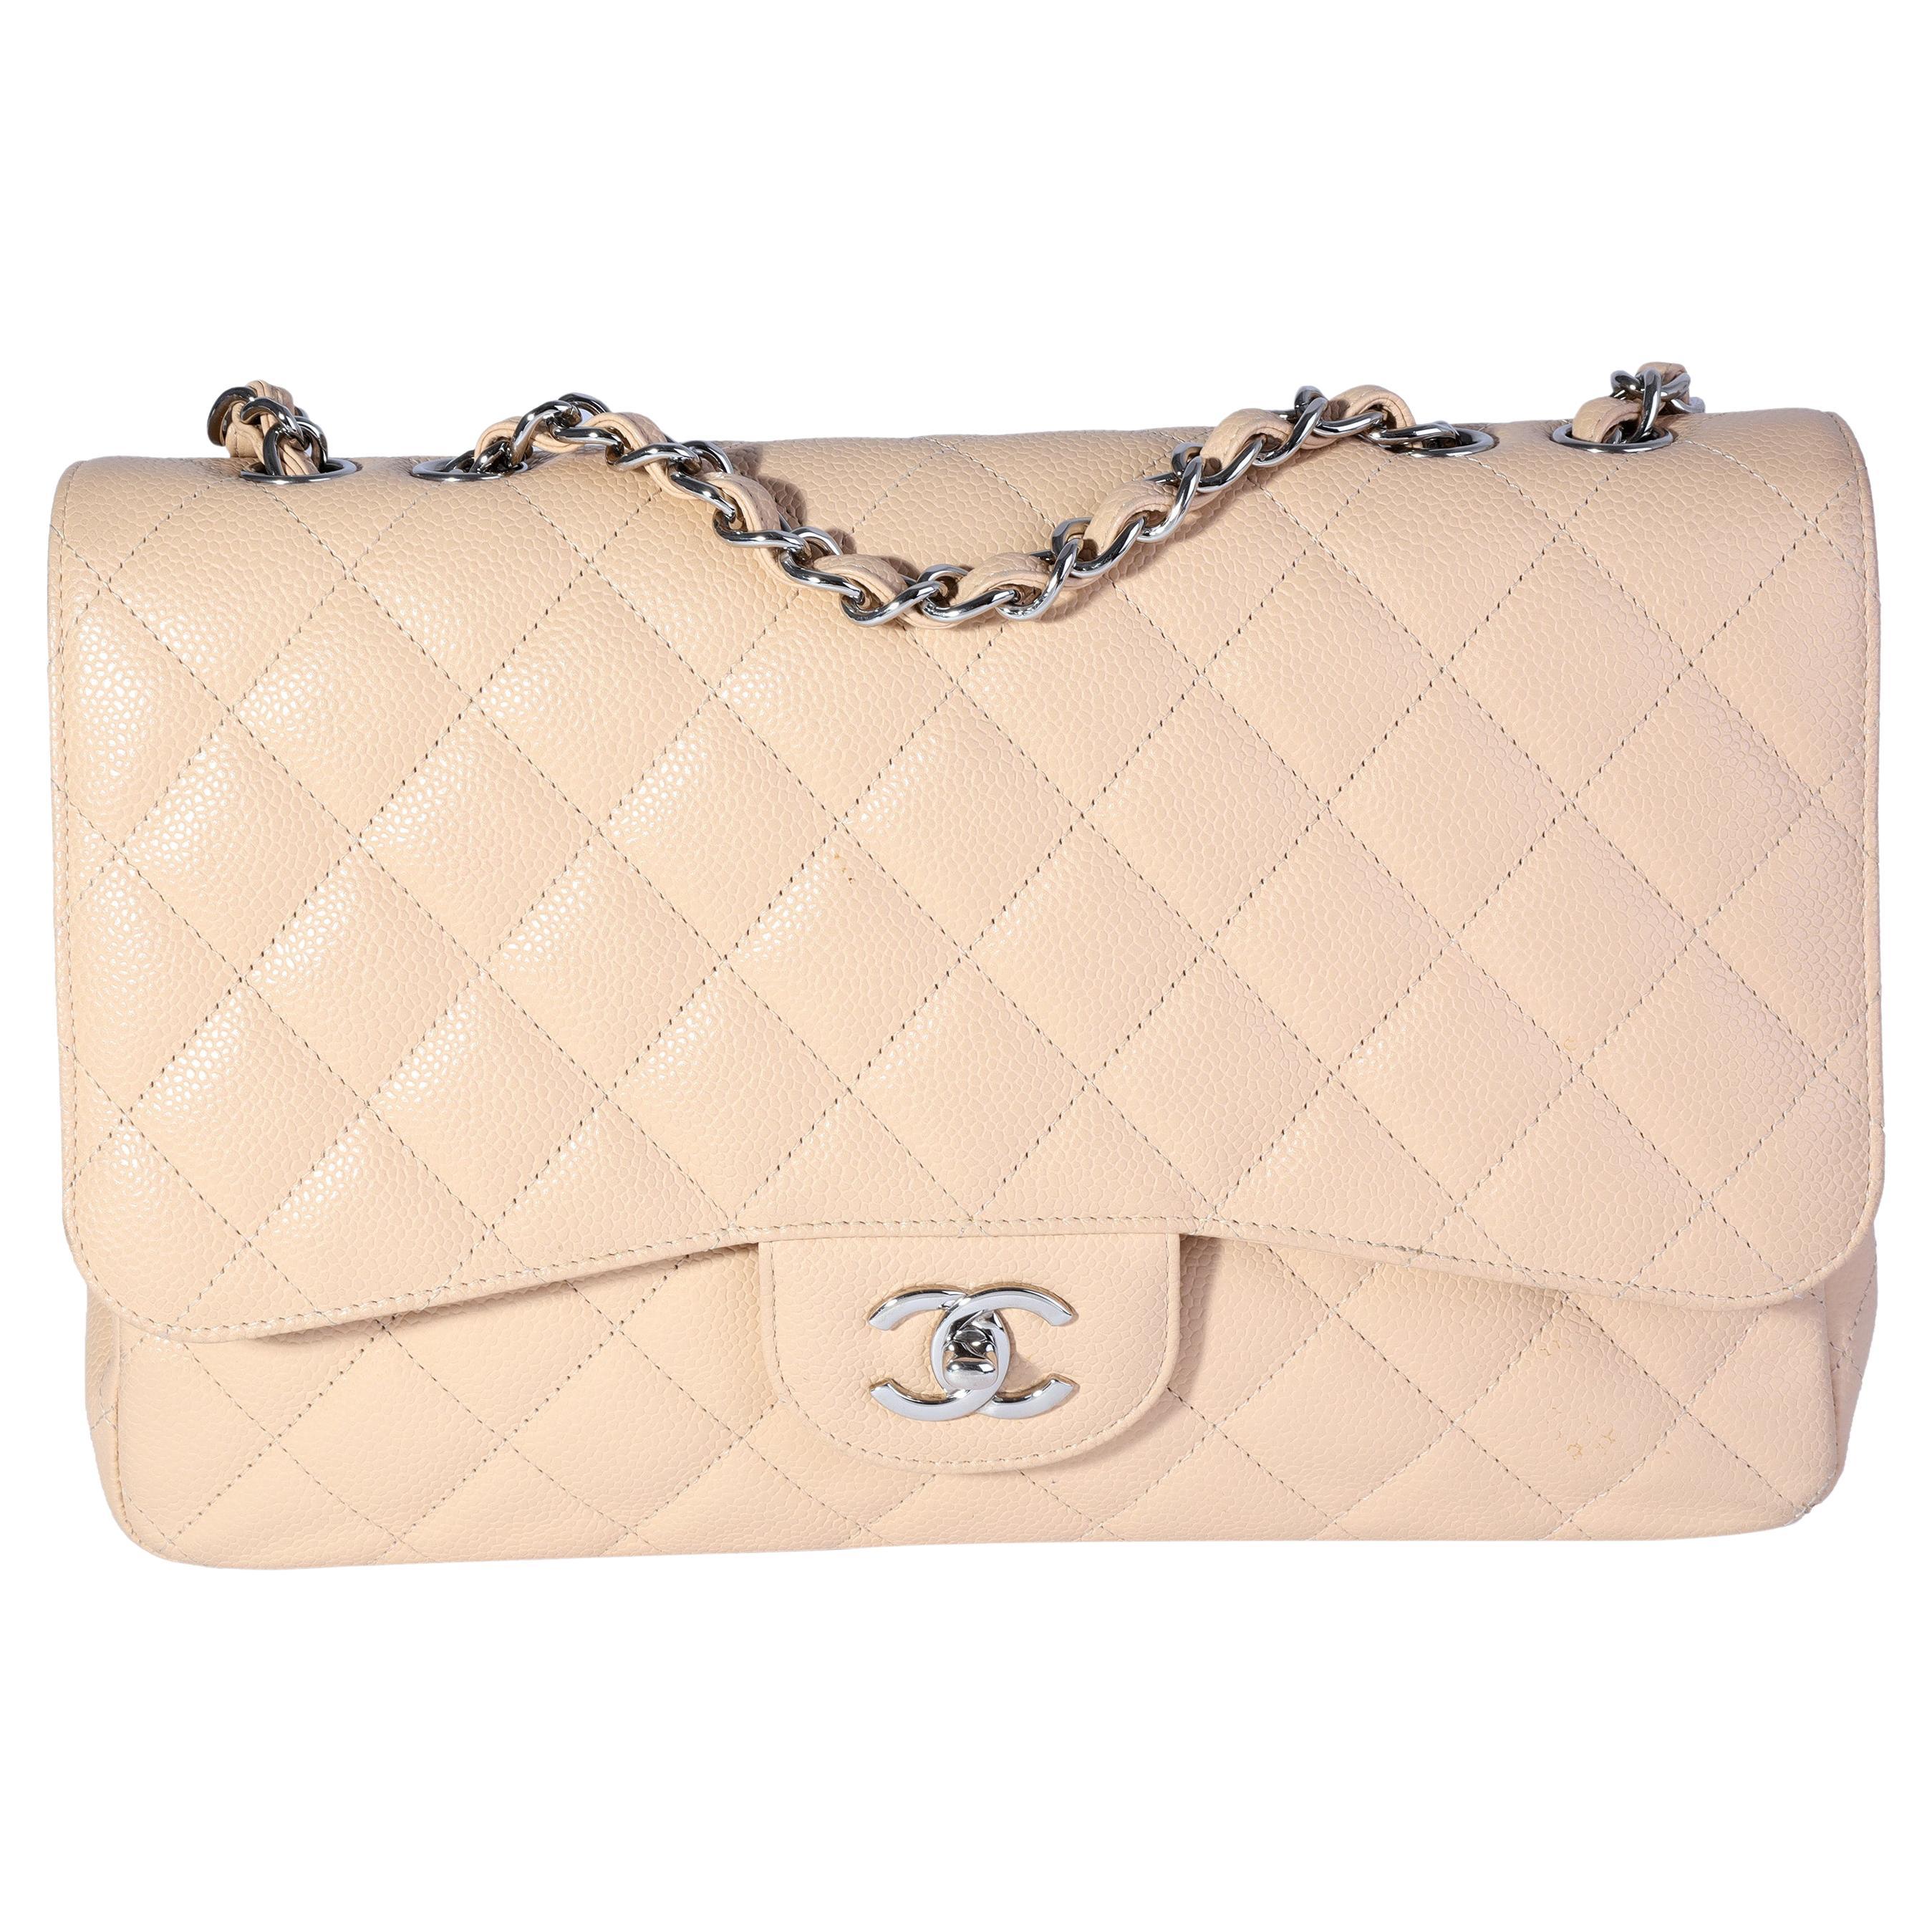 Chanel Beige Jumbo Bag - 24 For Sale on 1stDibs